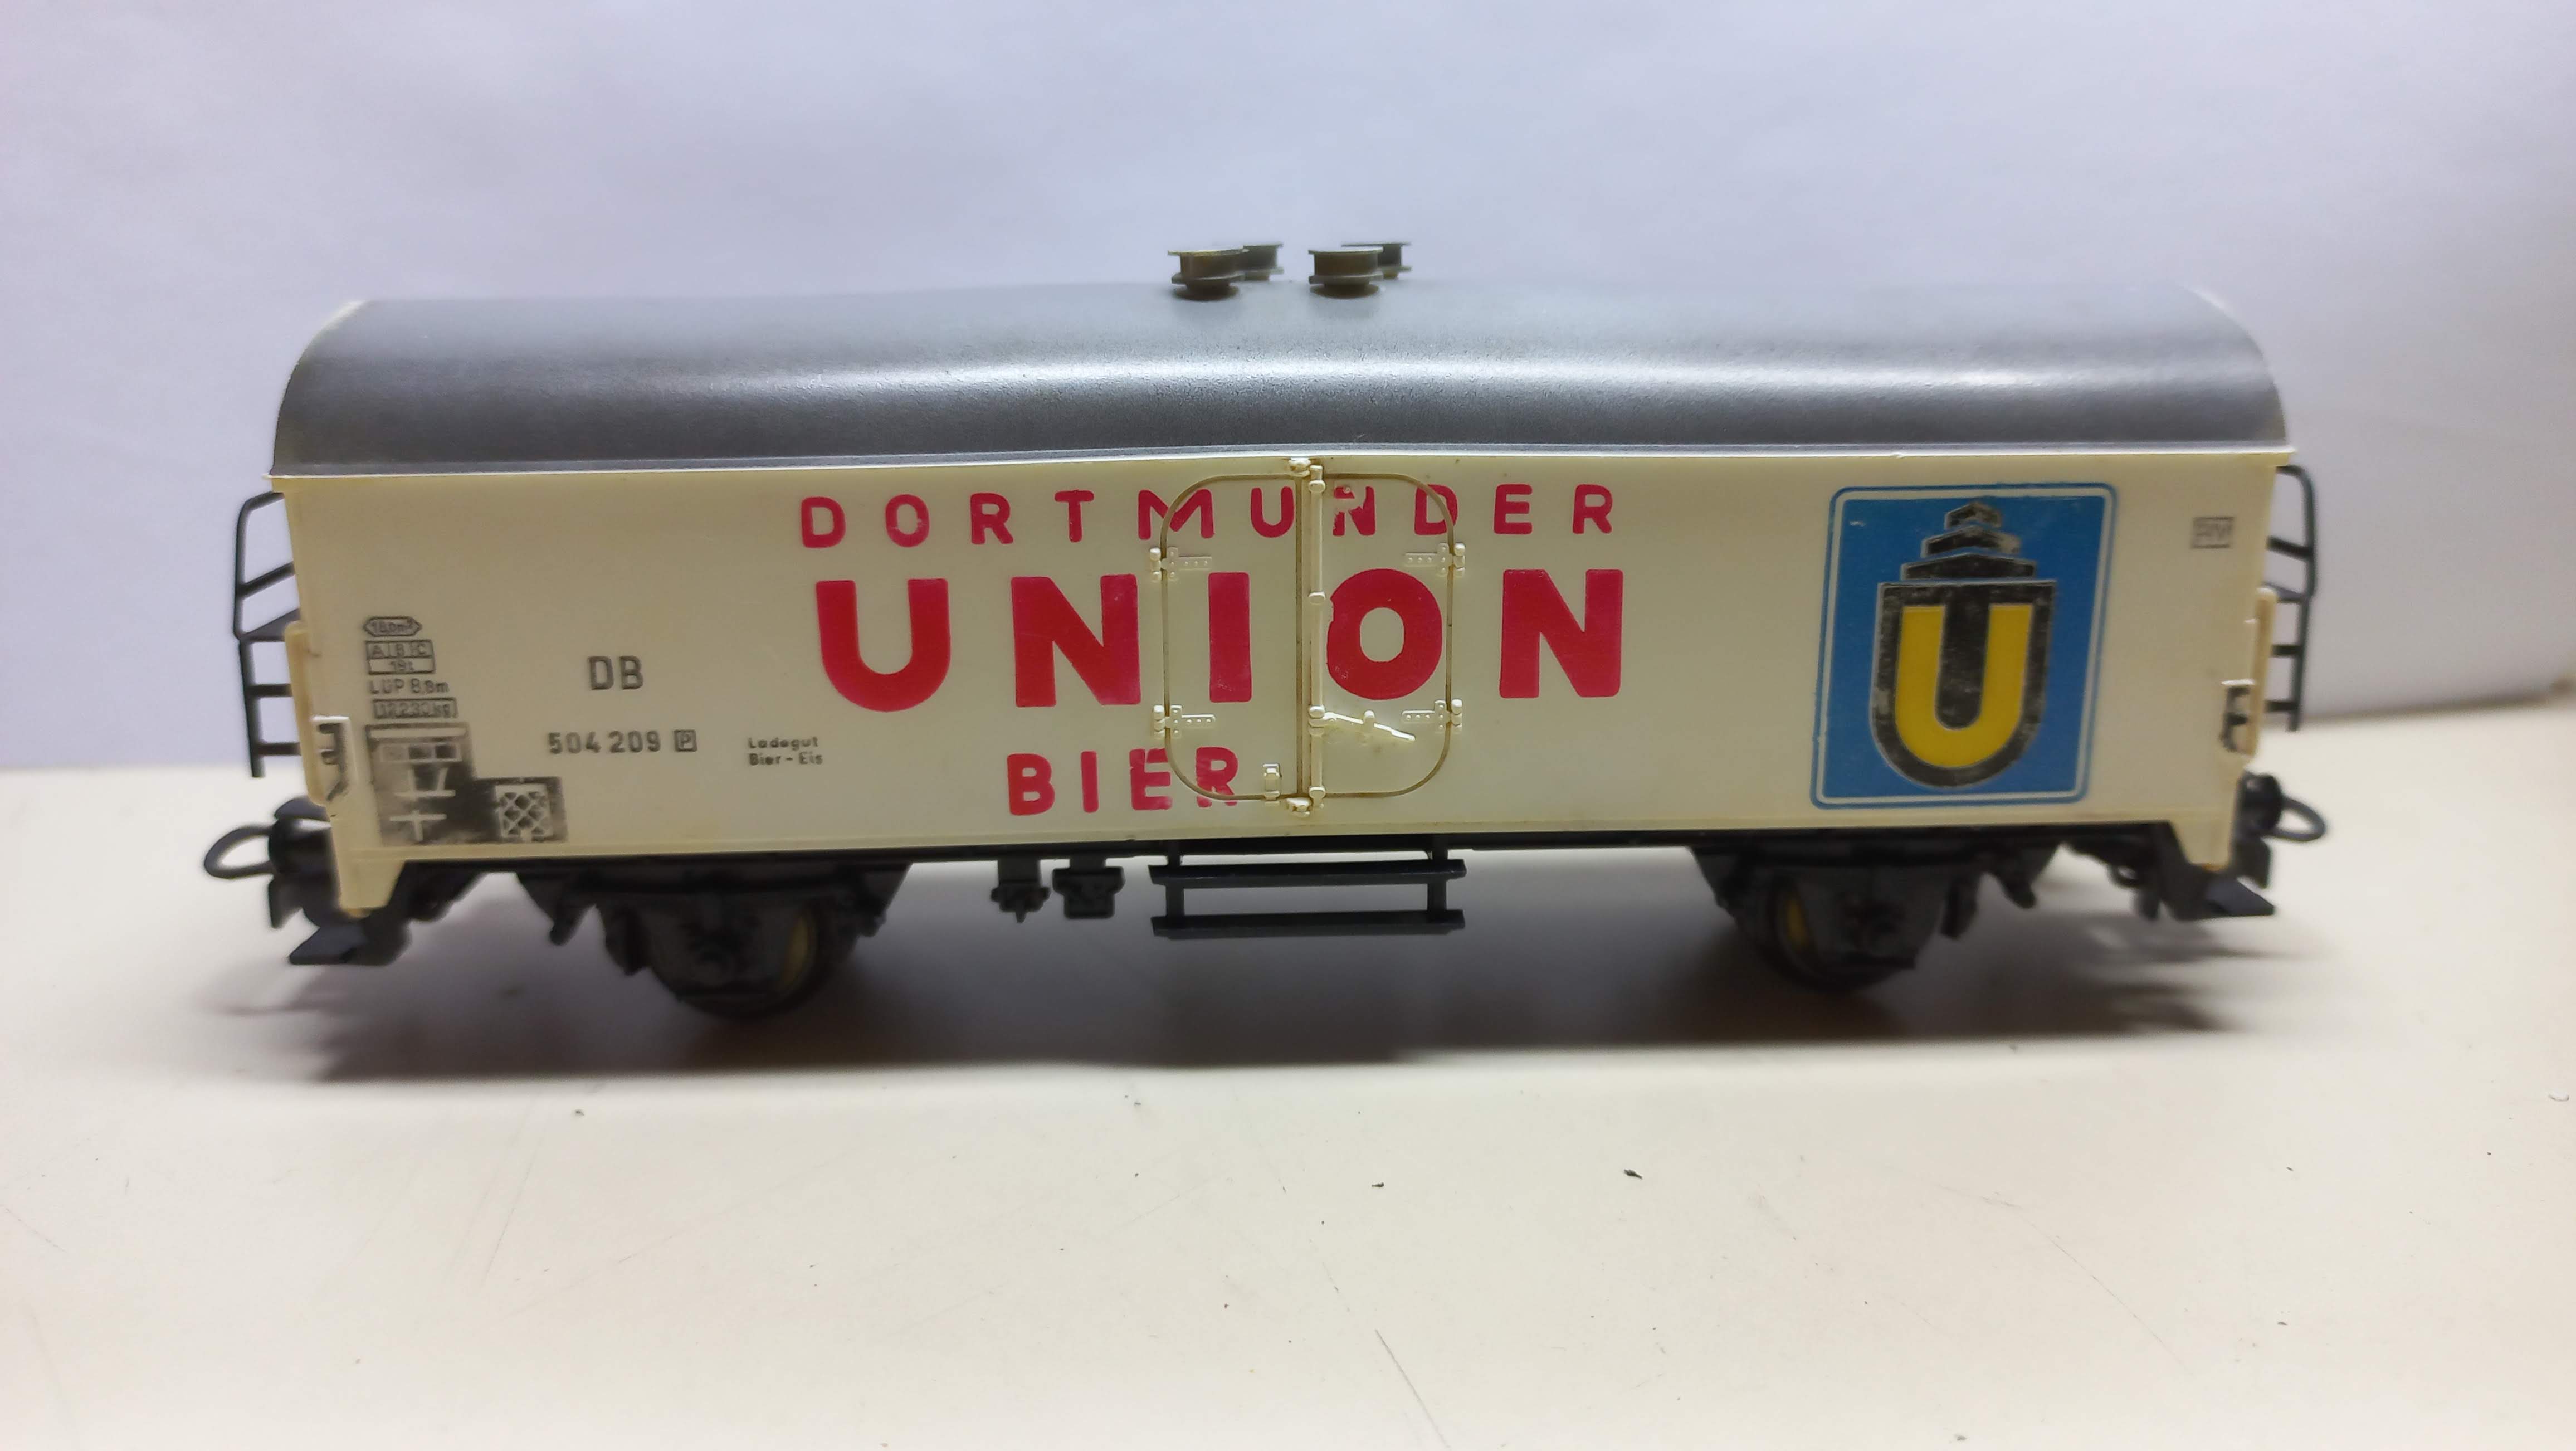 Vagão Dortmunder Union Bier #504209 - Marklin com rodas isoladas